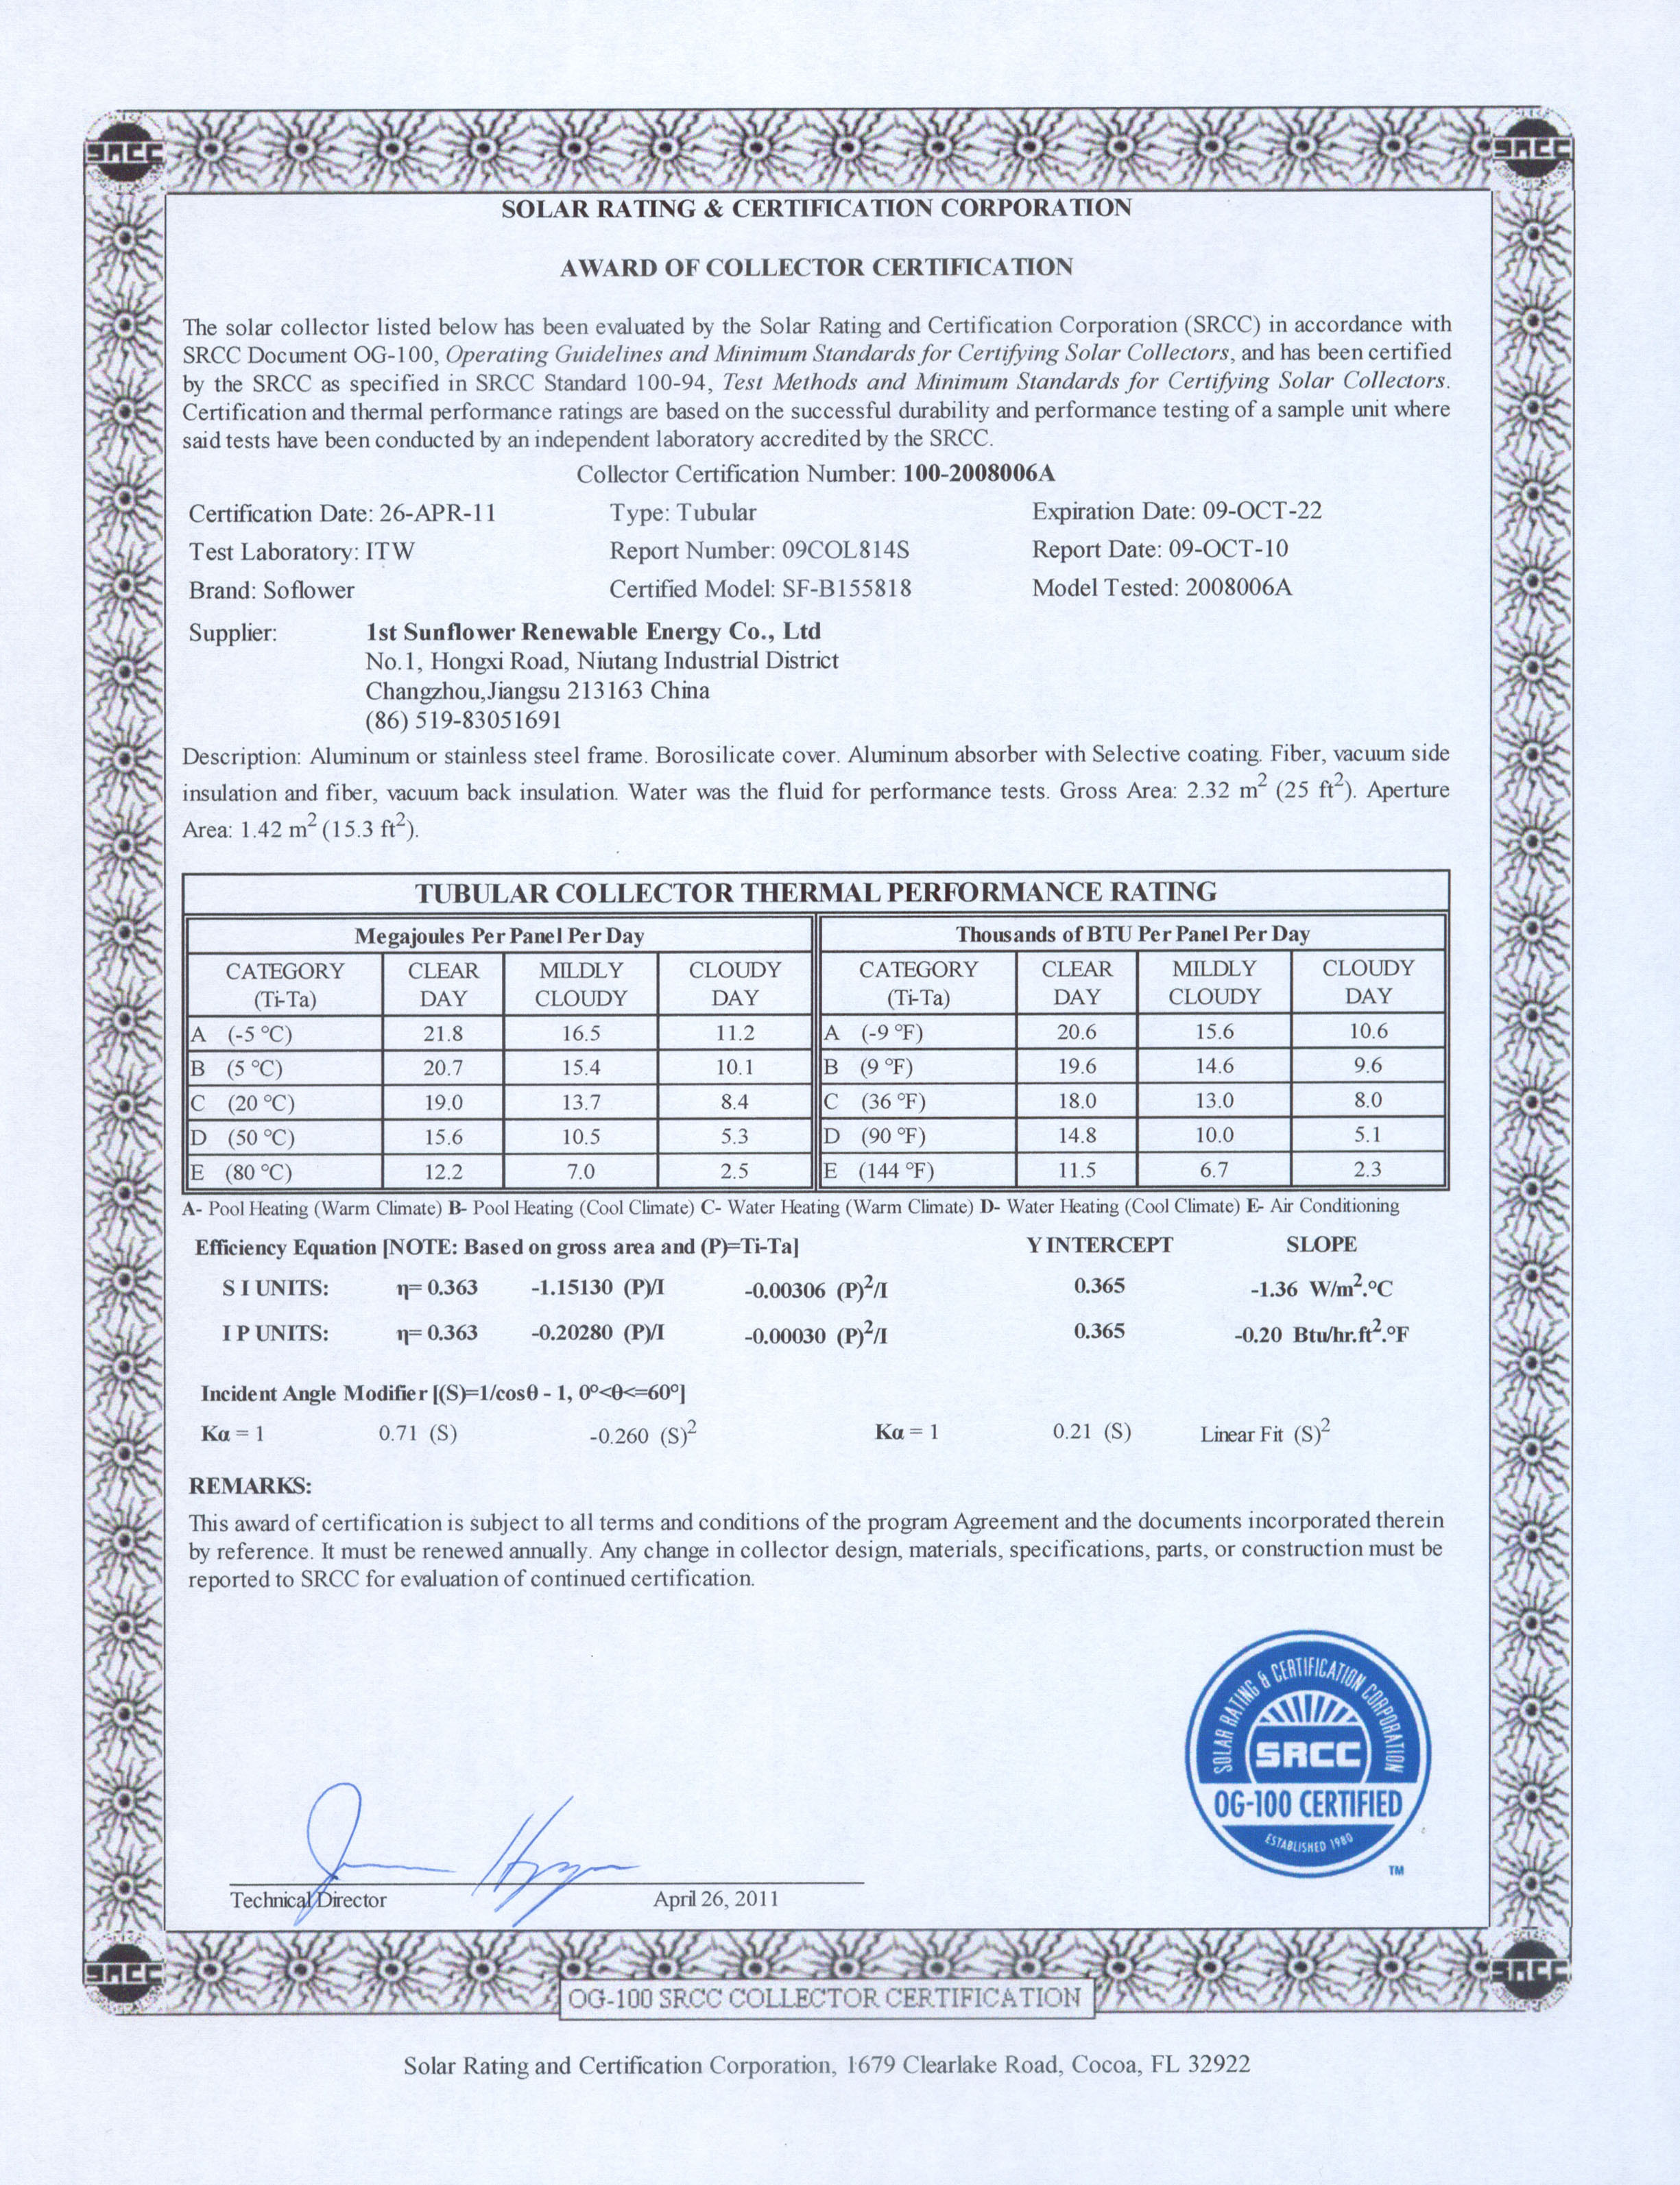 SF-B155818 SRCC certificado del laboratorio de ITW